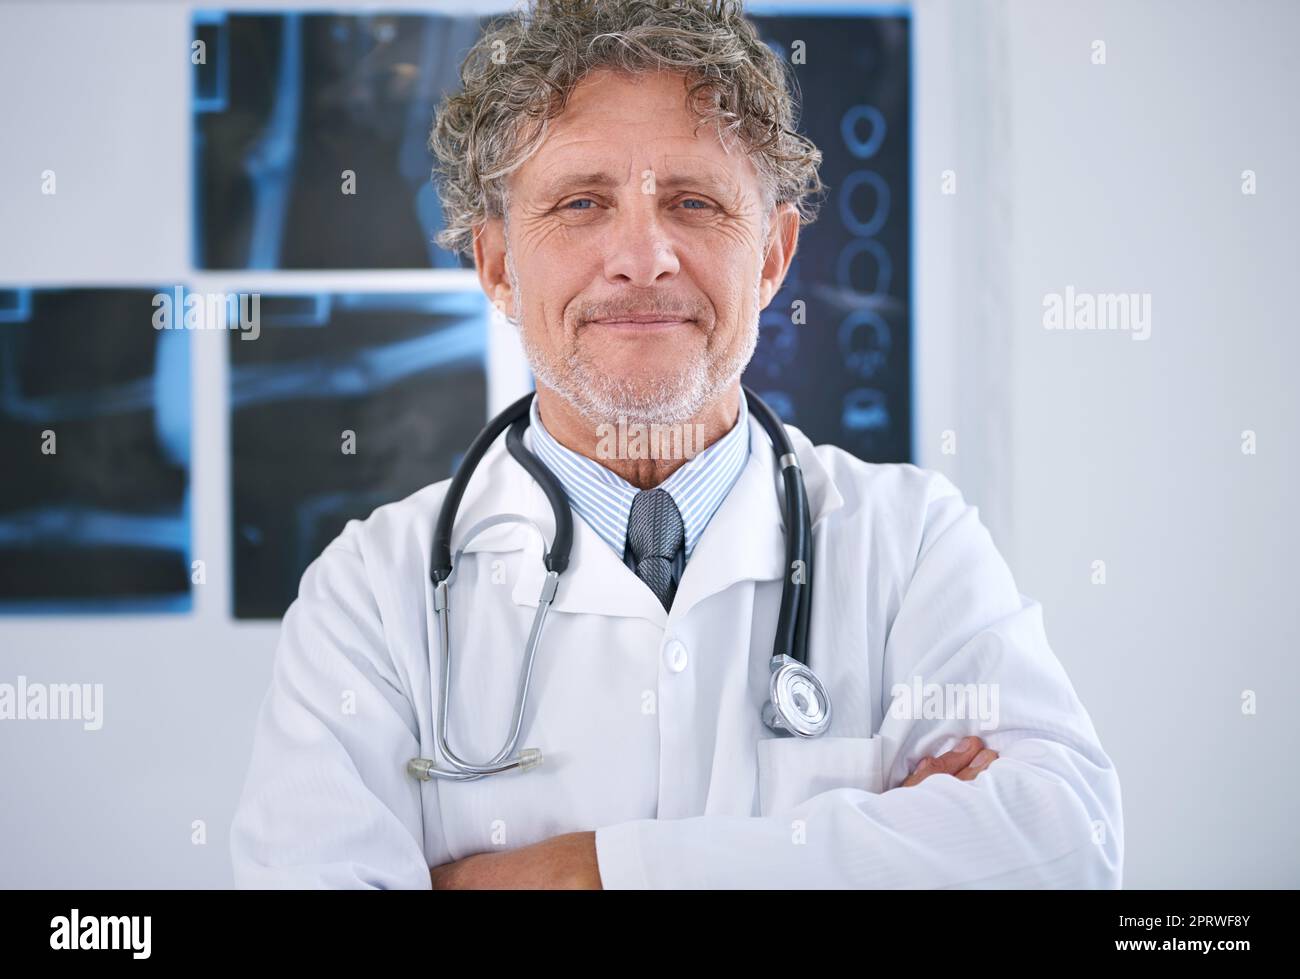 HES un praticien professionnel. Portrait d'un radiologue mature debout dans son bureau Banque D'Images